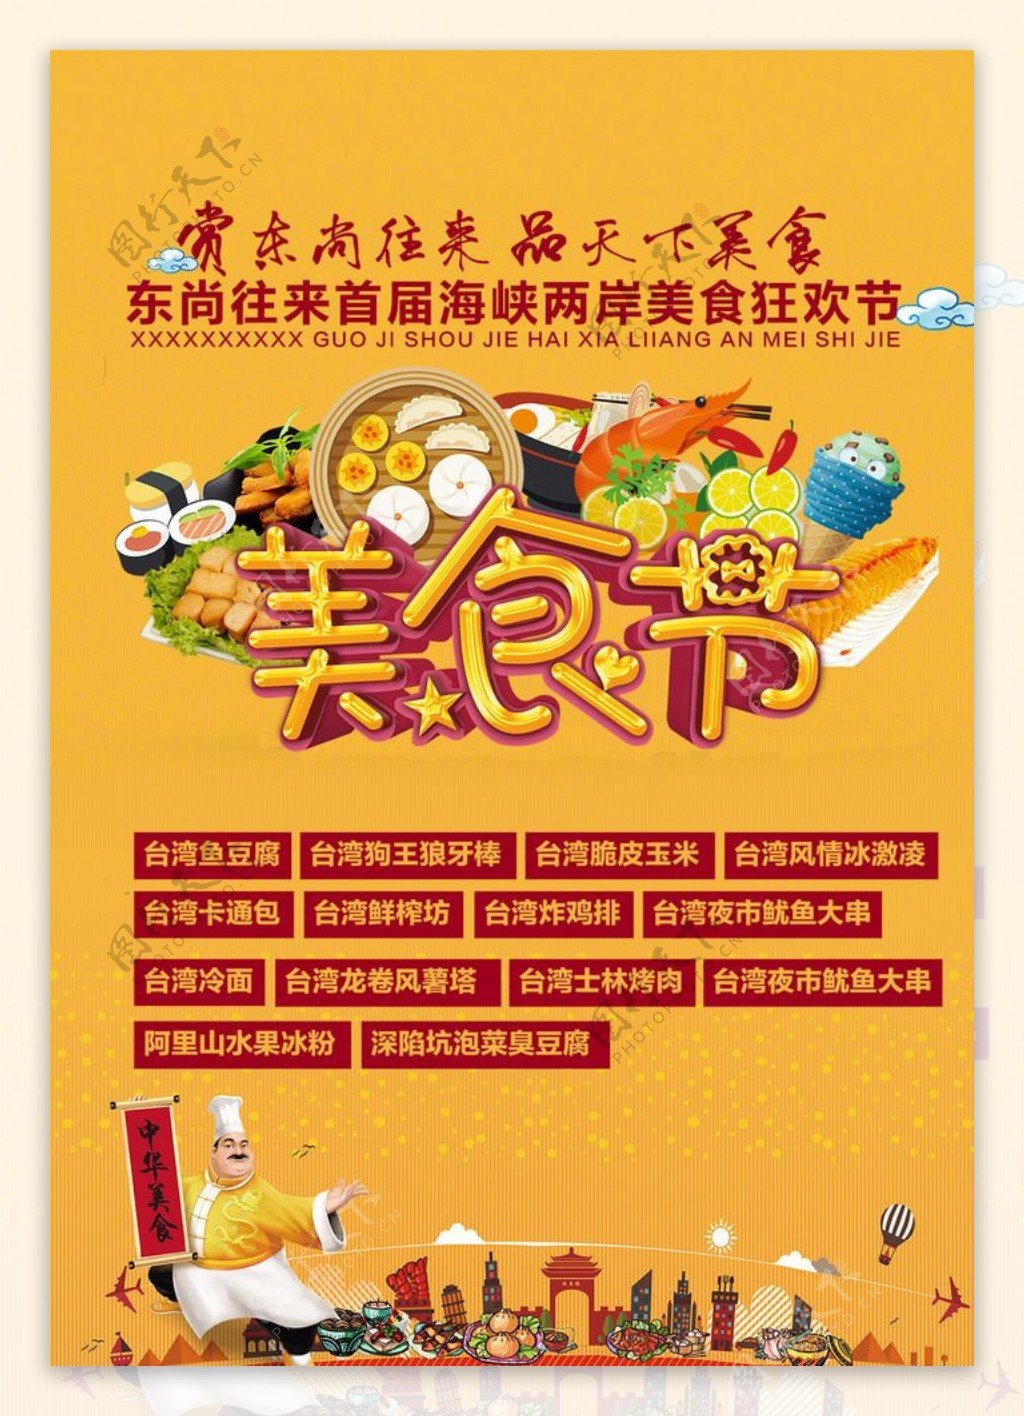 美食节宣传海报